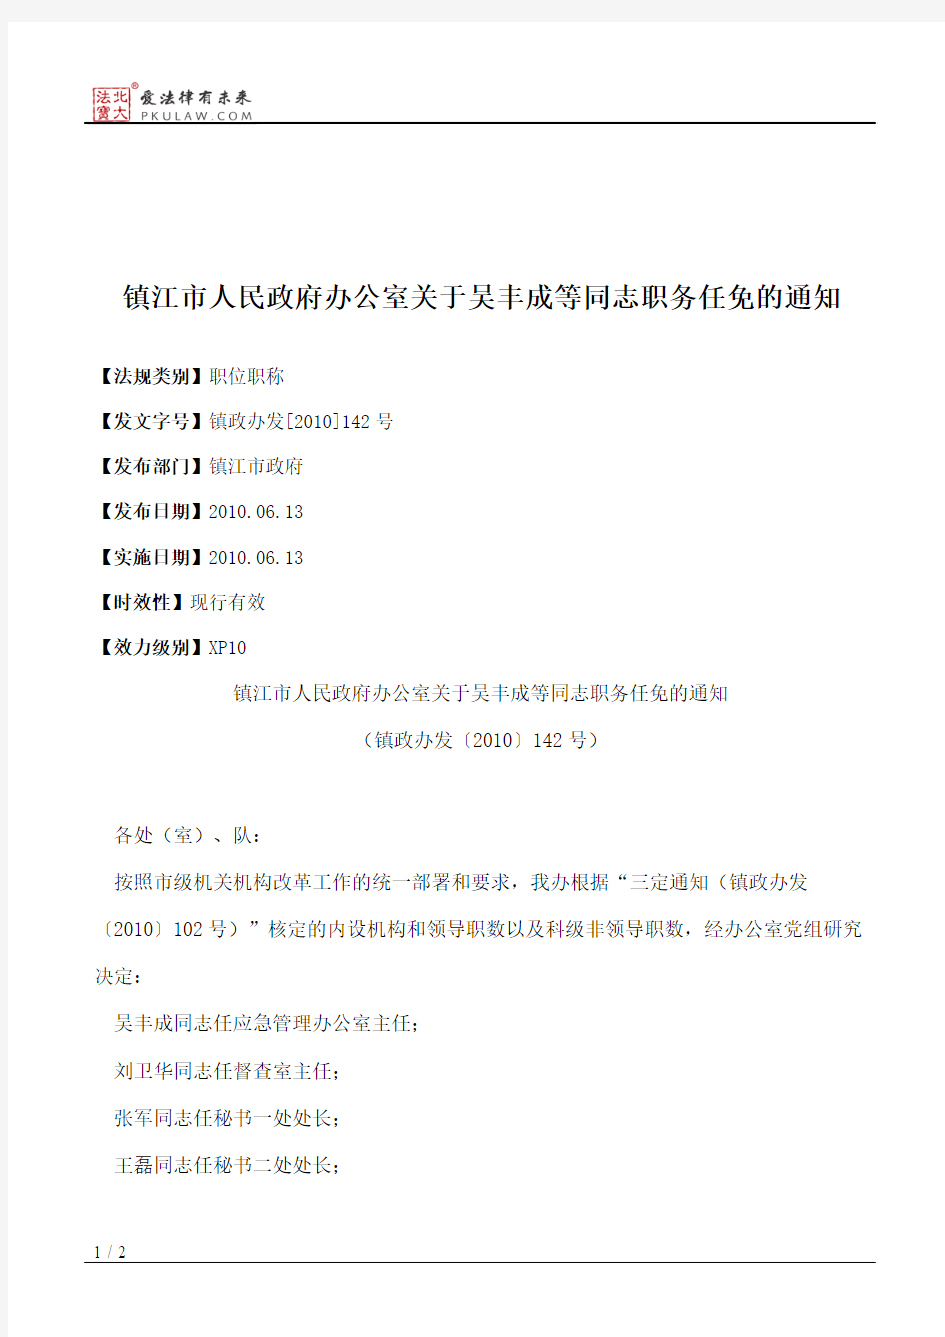 镇江市人民政府办公室关于吴丰成等同志职务任免的通知